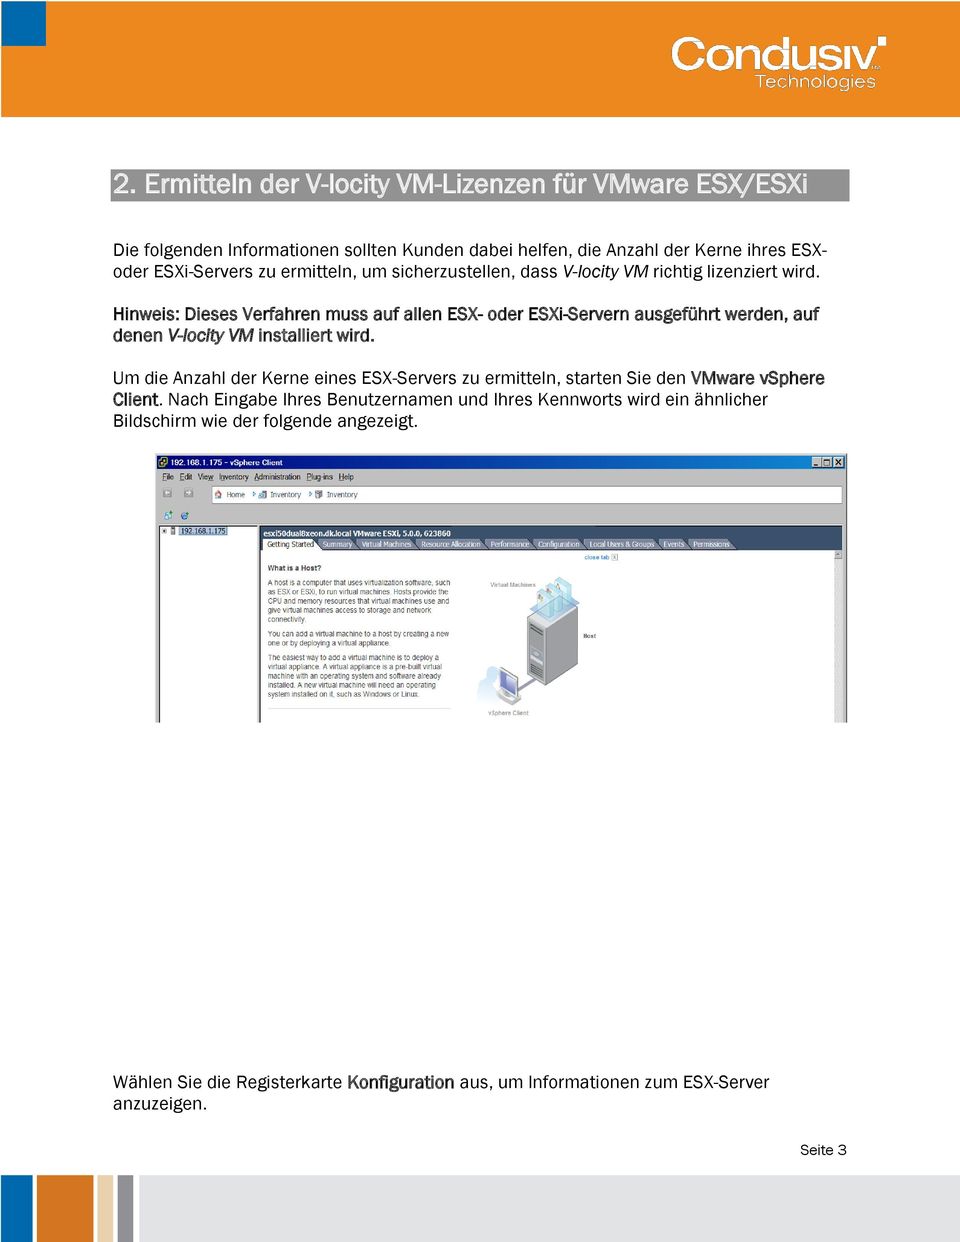 Hinweis: Dieses Verfahren muss auf allen ESX- oder ESXi-Servern ausgeführt werden, auf denen V-locity VM installiert wird.